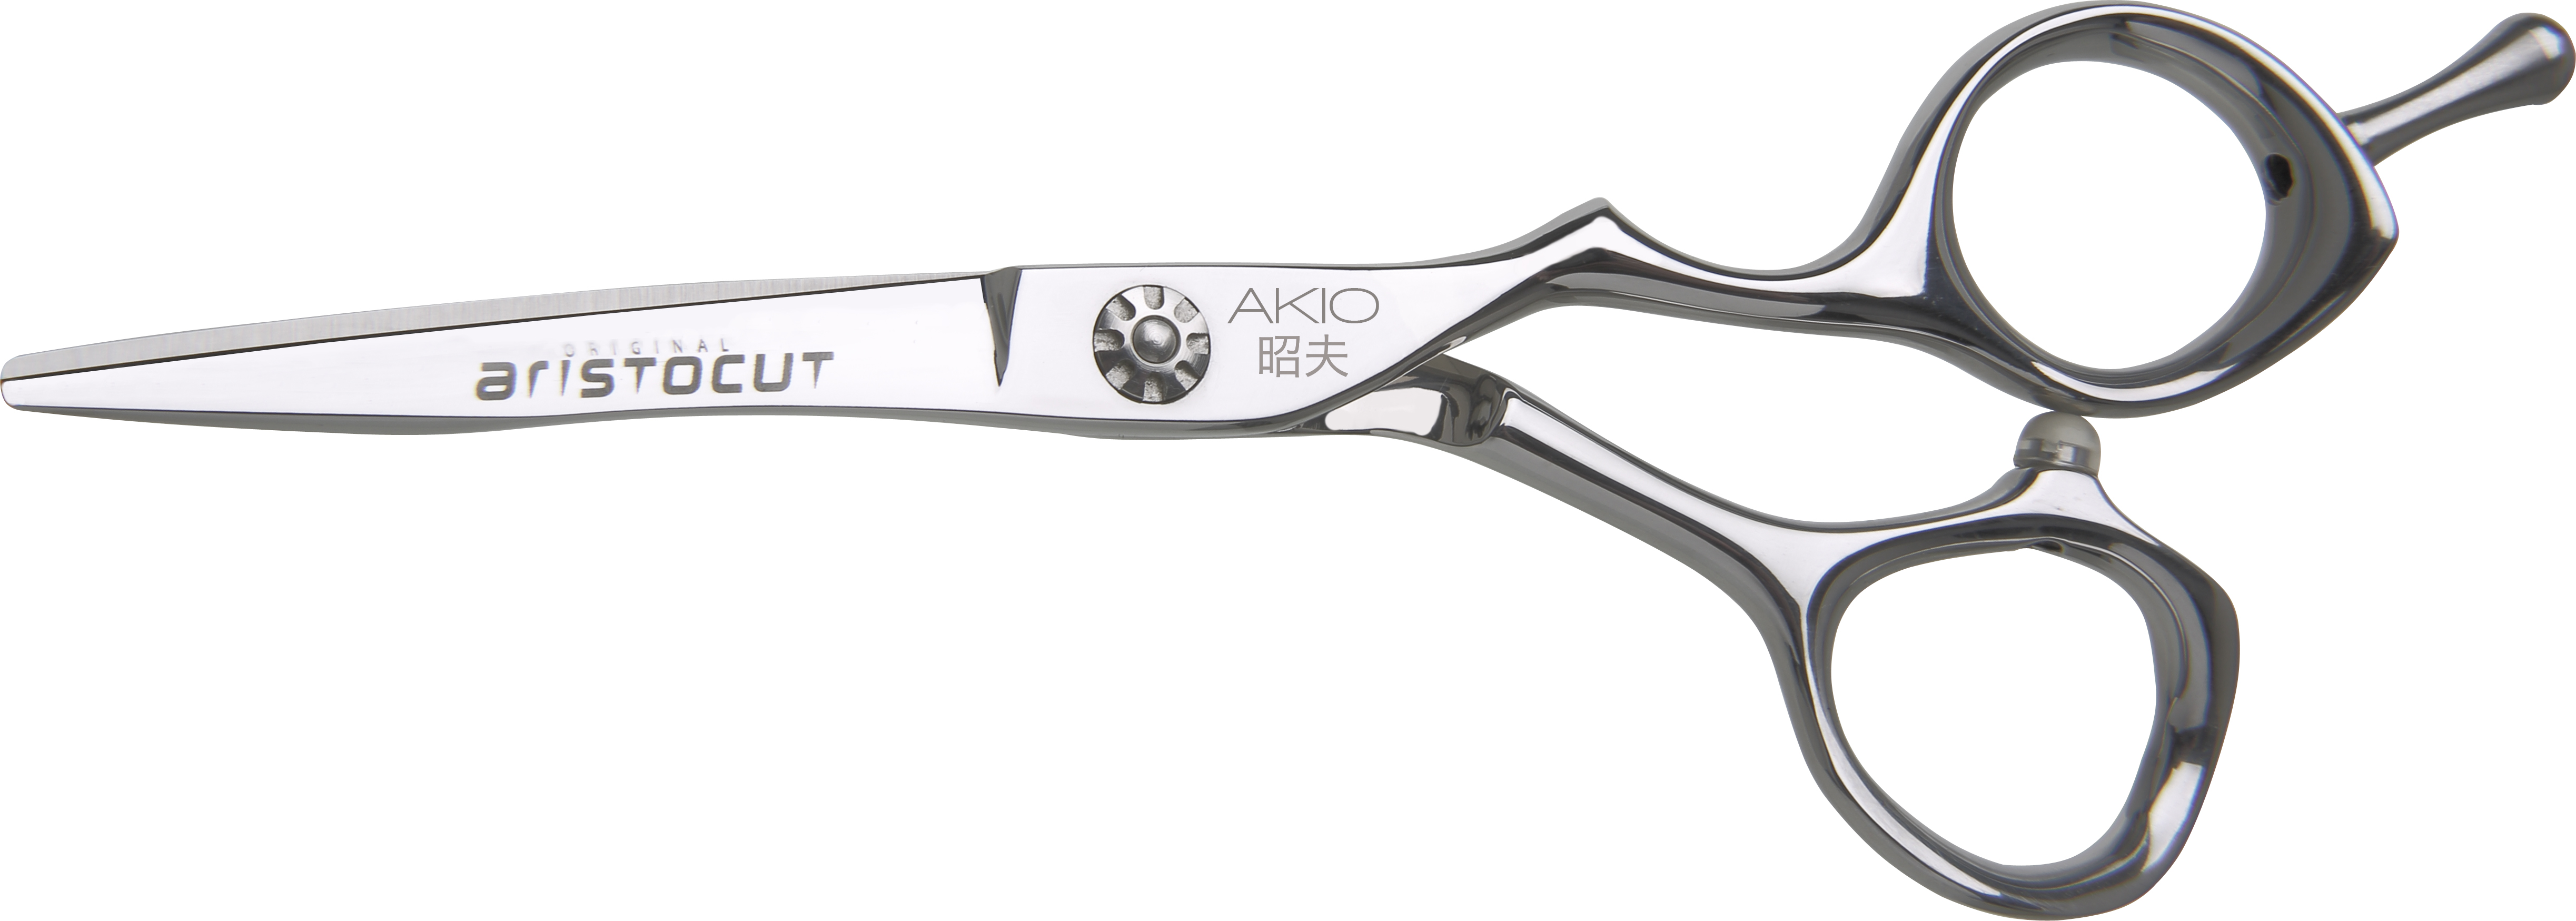 AKIO Hair cutting scissors